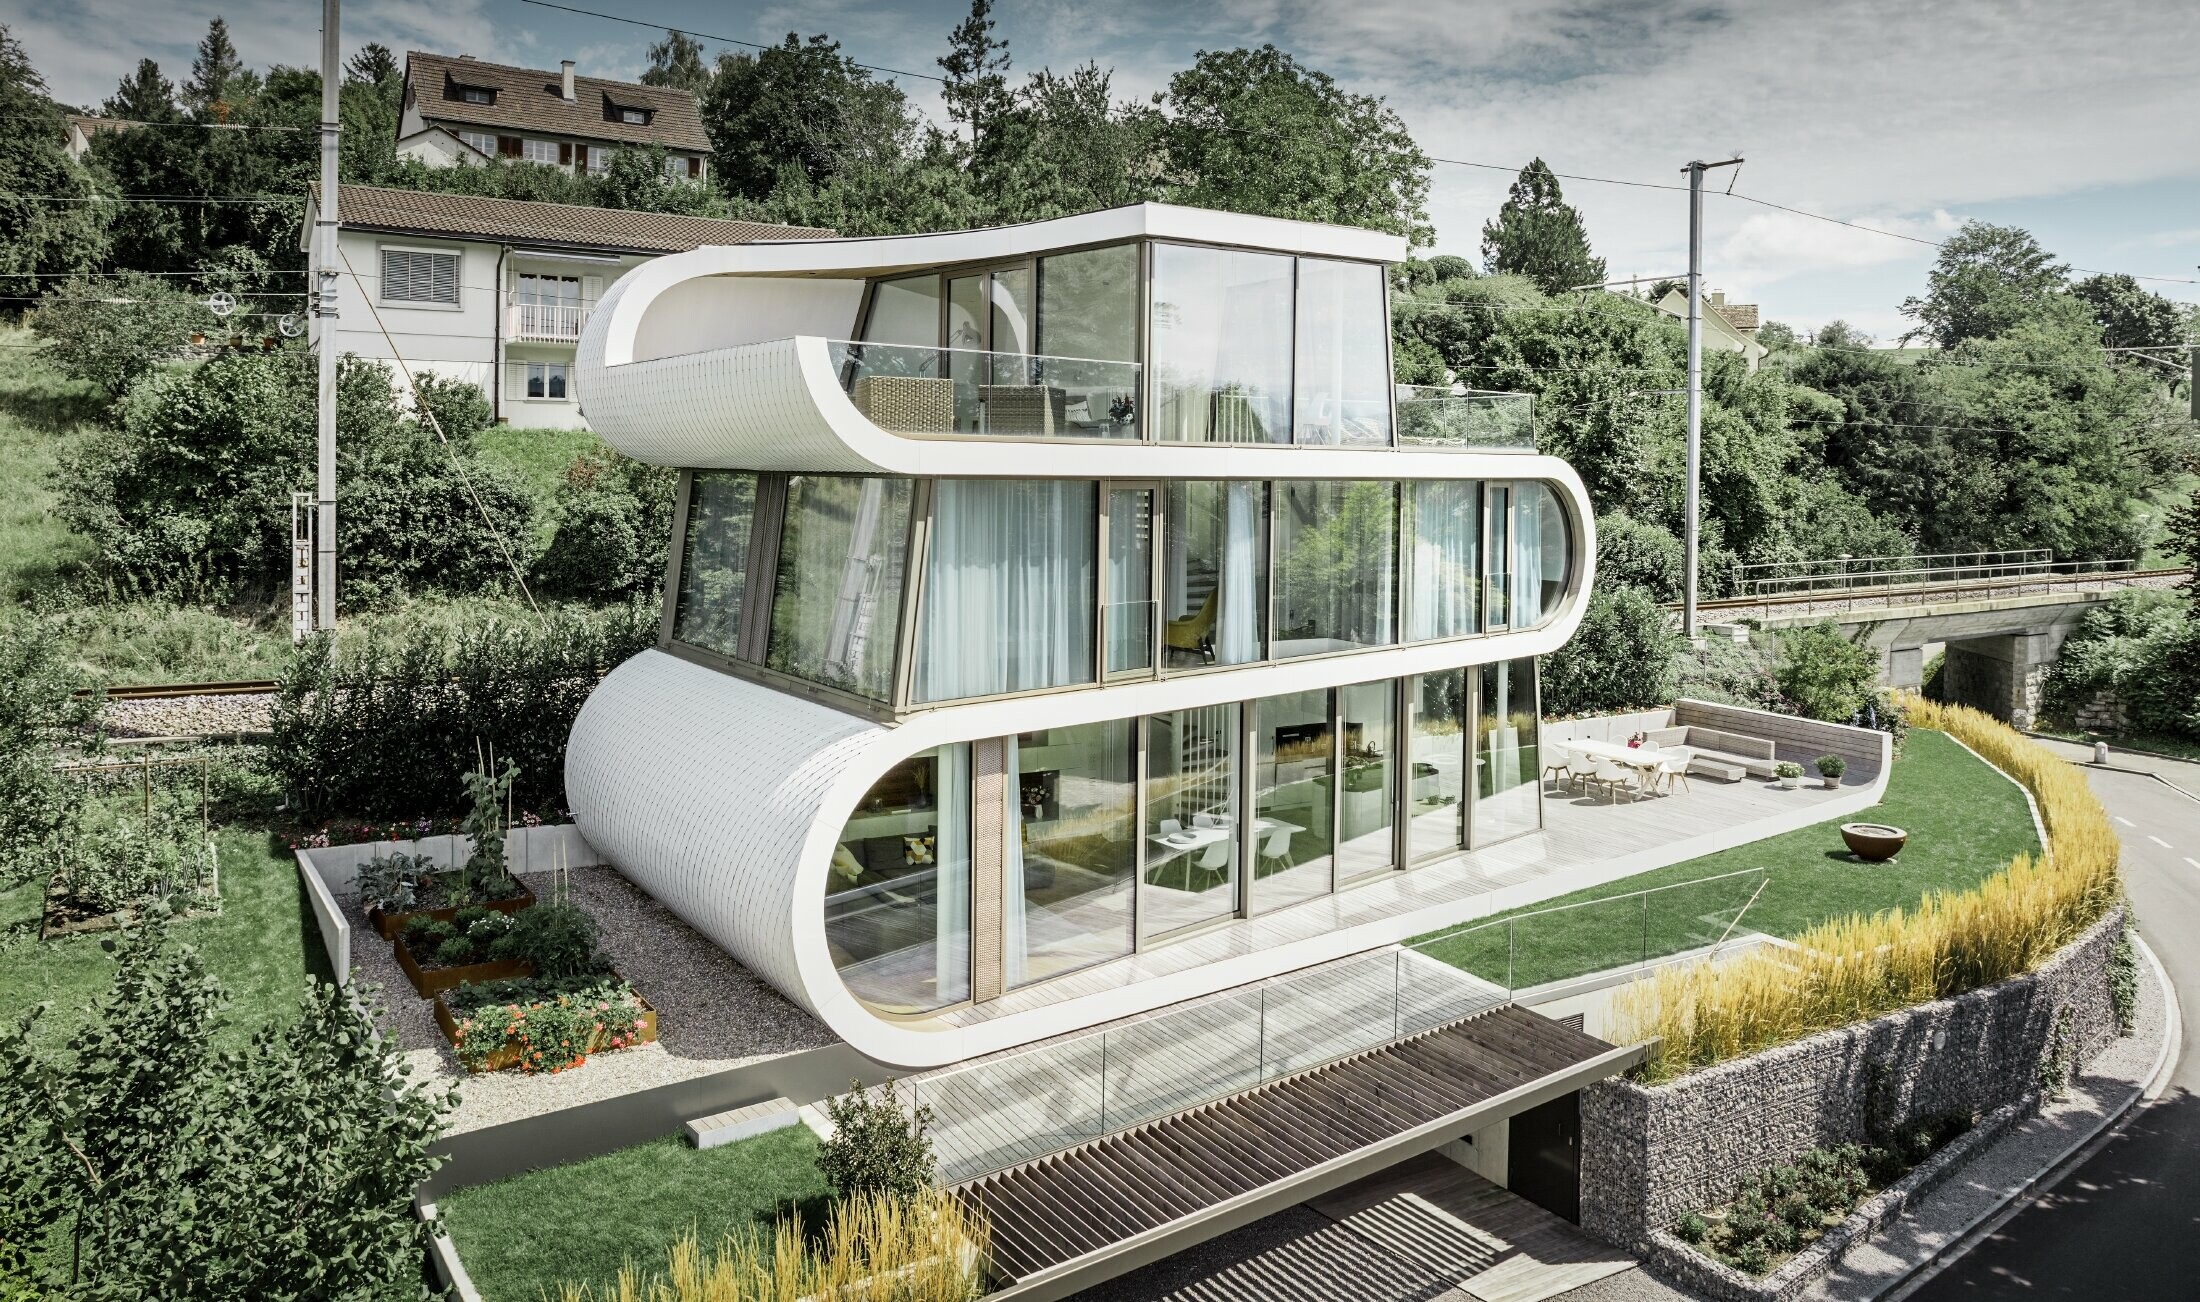 Sehr modernes Einfamilienhaus entworfen durch Architekt Camenzind aus Zürich; Ein geschwungenes Band verbindet die einzelnen Ebenen miteinander. Die Rundungen wurden mit der PREFA Dachraute klein in Reinweiß verkleidet. Das Haus hat viele und große Glasflächen, wodurch das ganze Haus sehr offen wirkt.